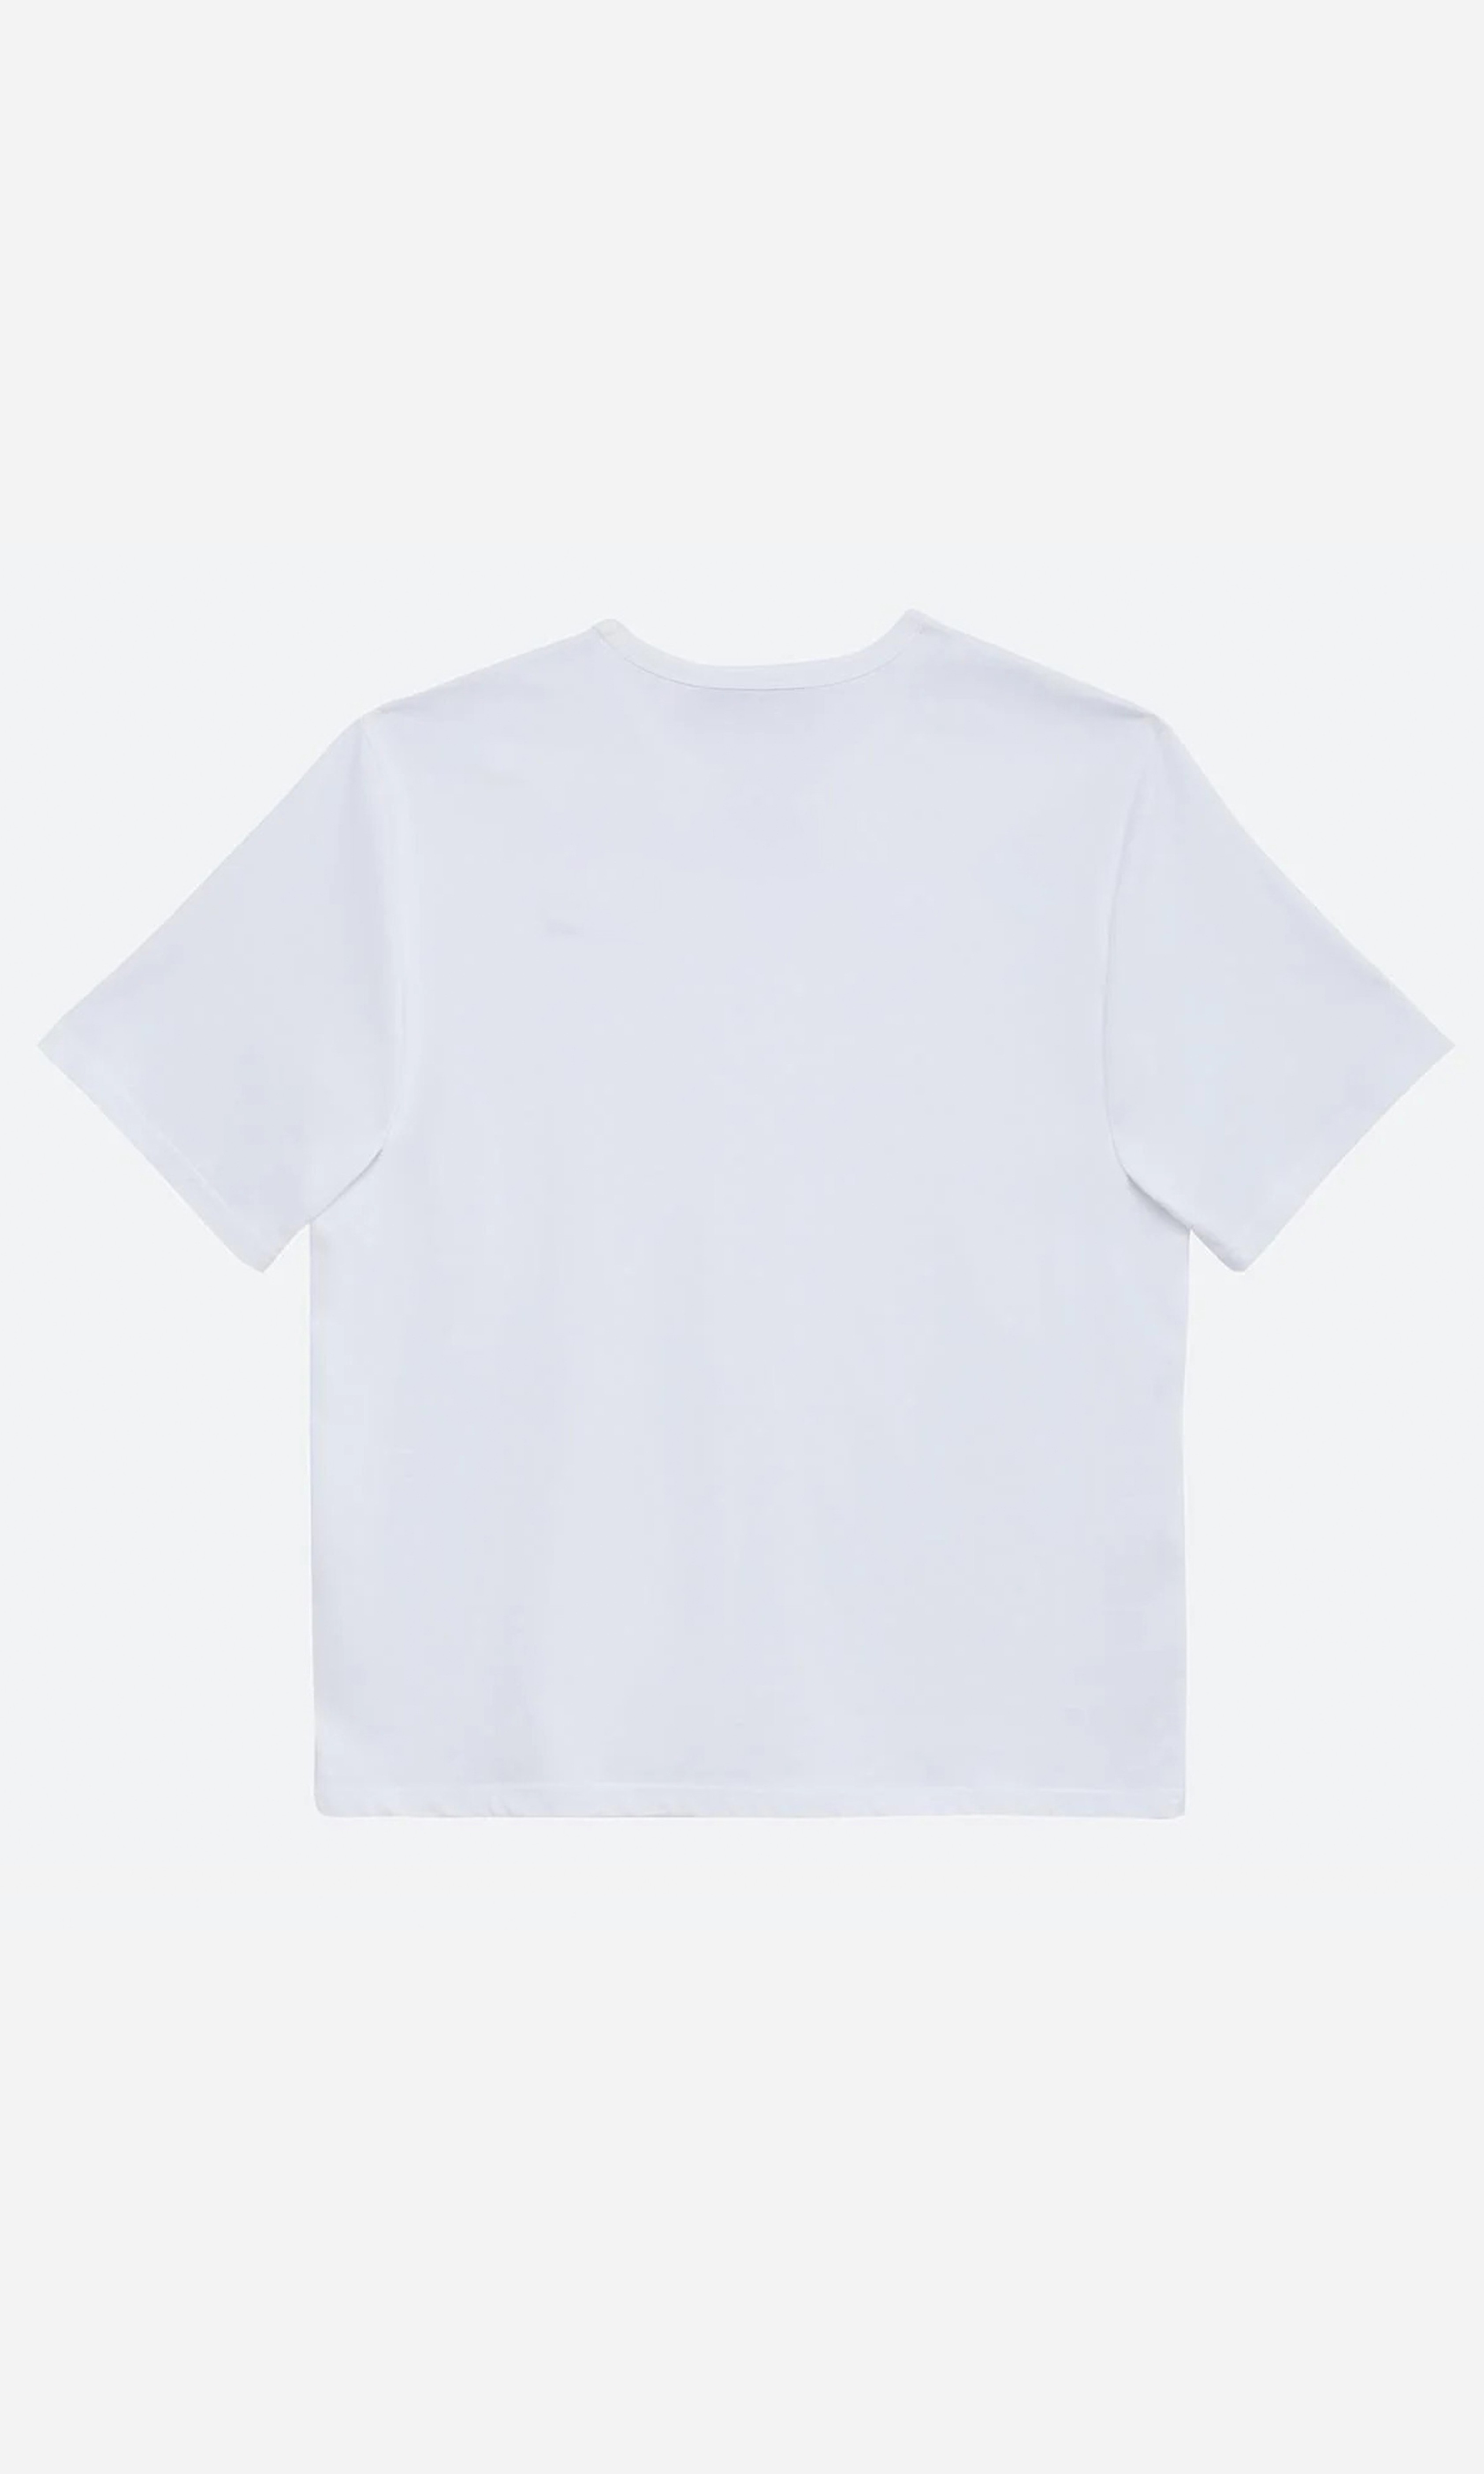 Hephaestus - Oversize Baskılı Unisex T-Shirt - Beyaz